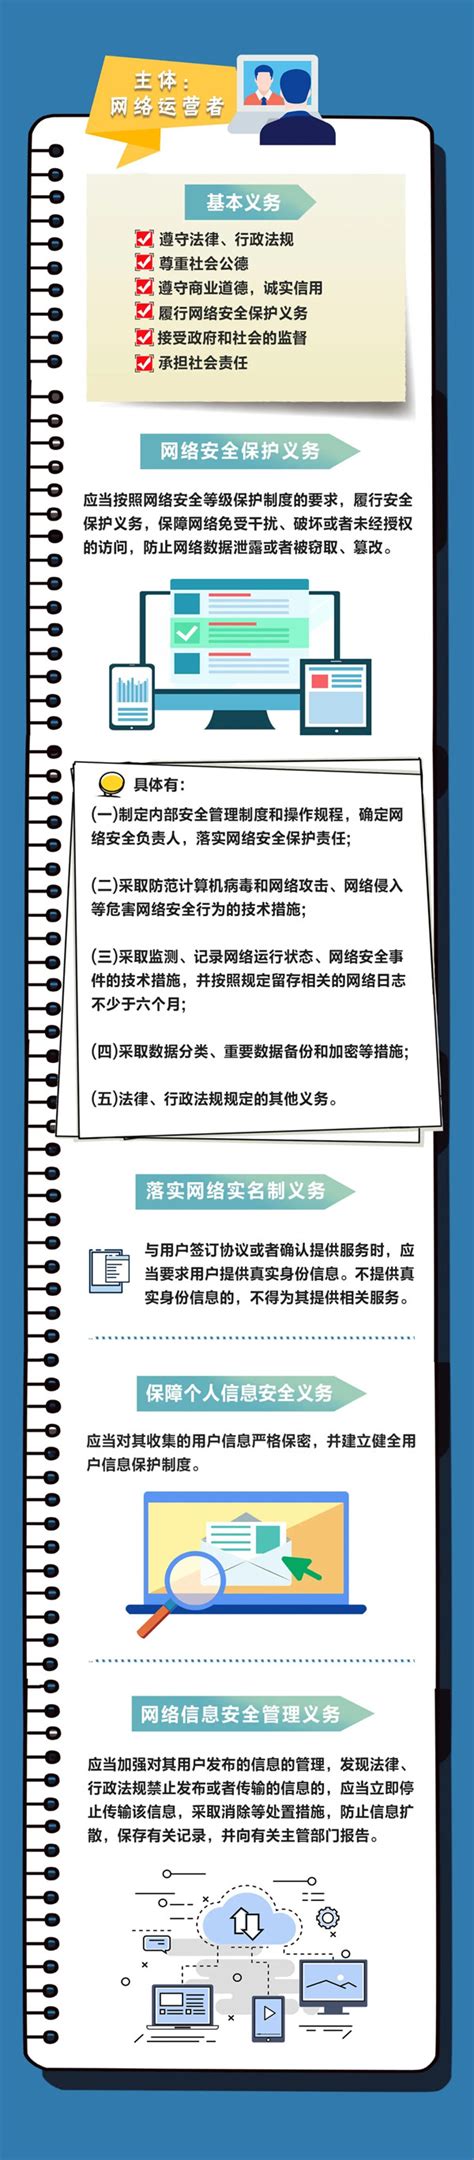 一图读懂《网络安全法》_工作动态_扬州市自然资源和规划局广陵分局